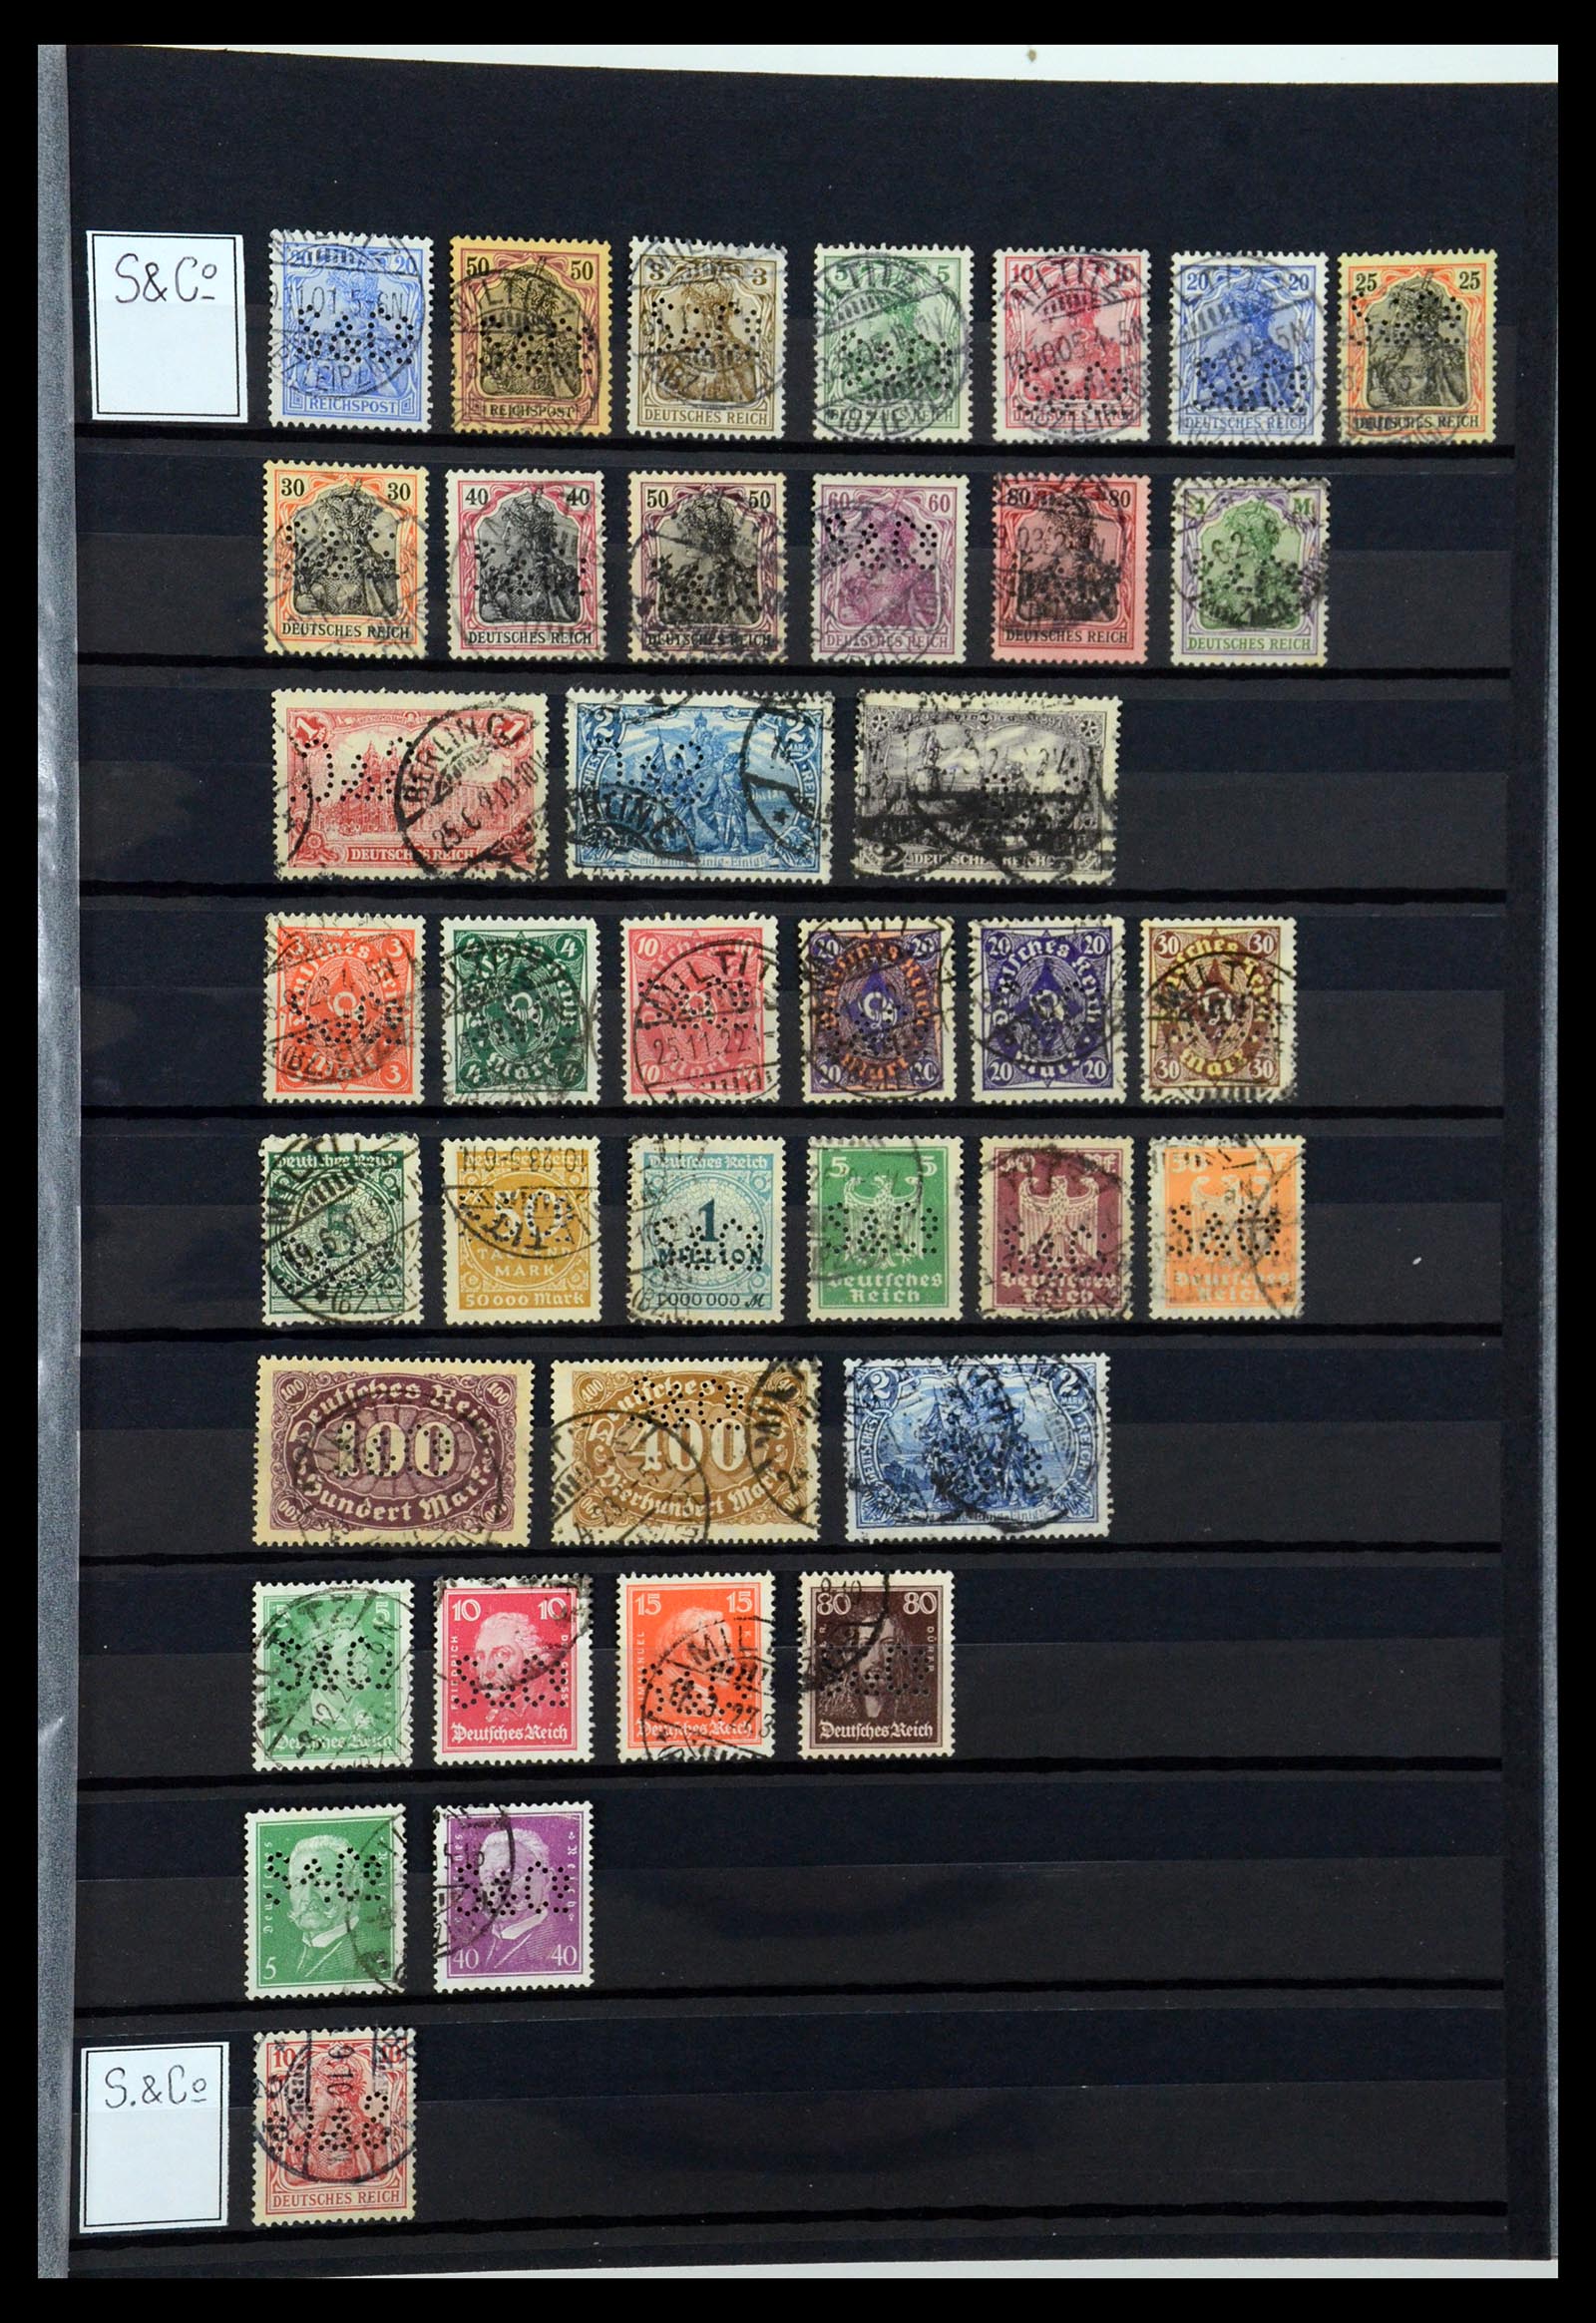 36405 306 - Stamp collection 36405 German Reich perfins 1880-1945.